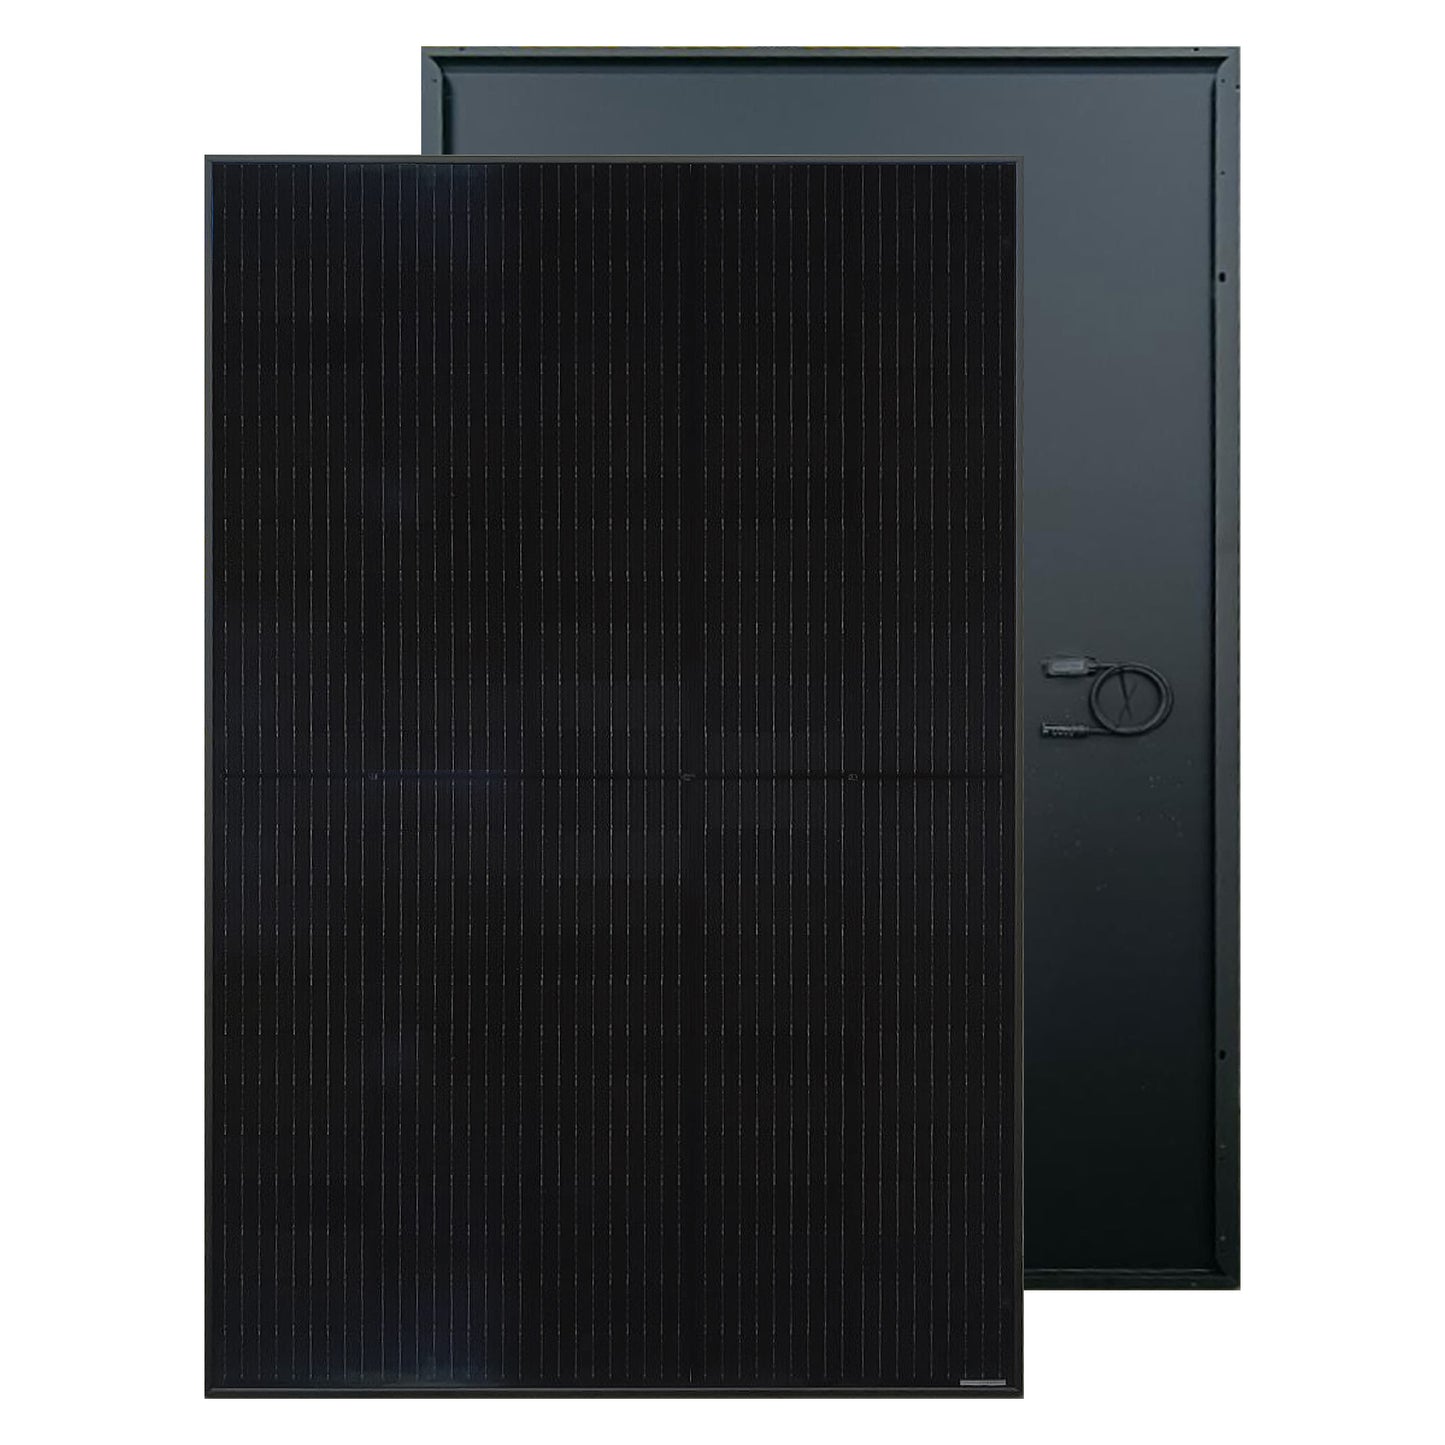 8 kW:n On-grid-aurinkosähköjärjestelmä ONG8. 9 MWh/vuosi